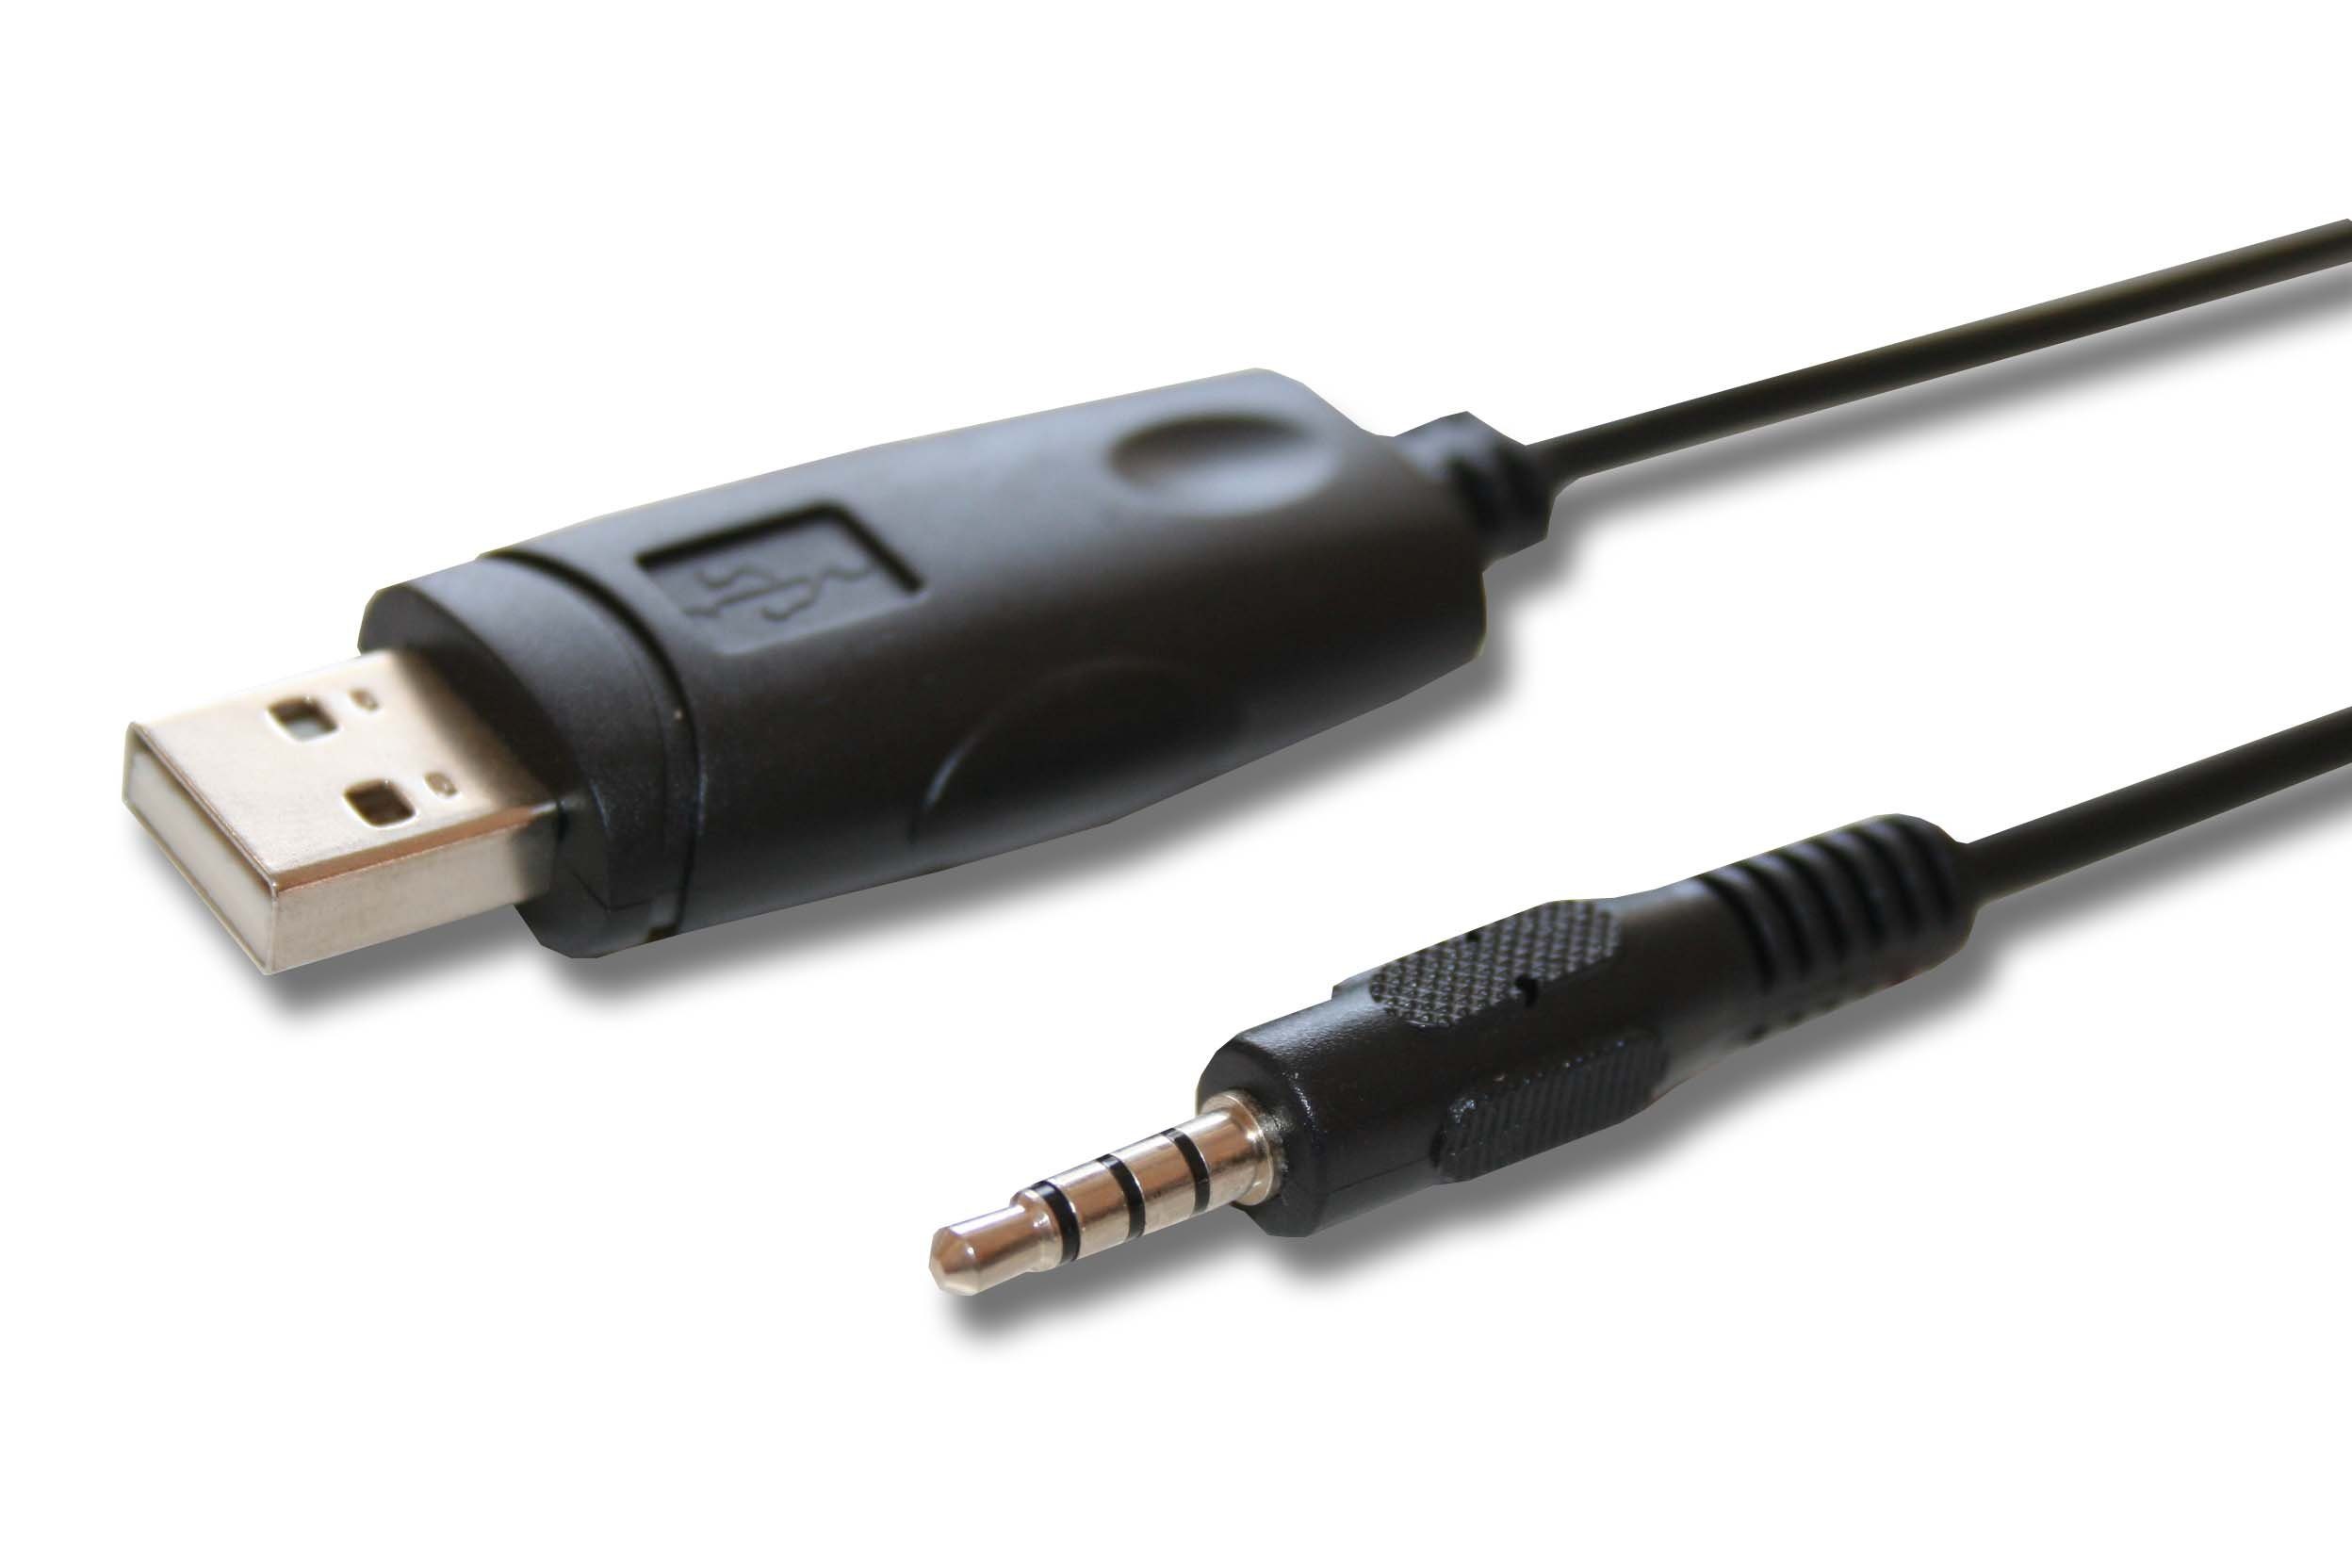 vhbw USB-Kabel, passend für Yaesu Vertex VX-230, VX-2R, VX-300, VX-310, VX-3R, VX-414, VX-417, VX-400, VX-410, VX-350 Business & Industrie & Funk Funkgerät